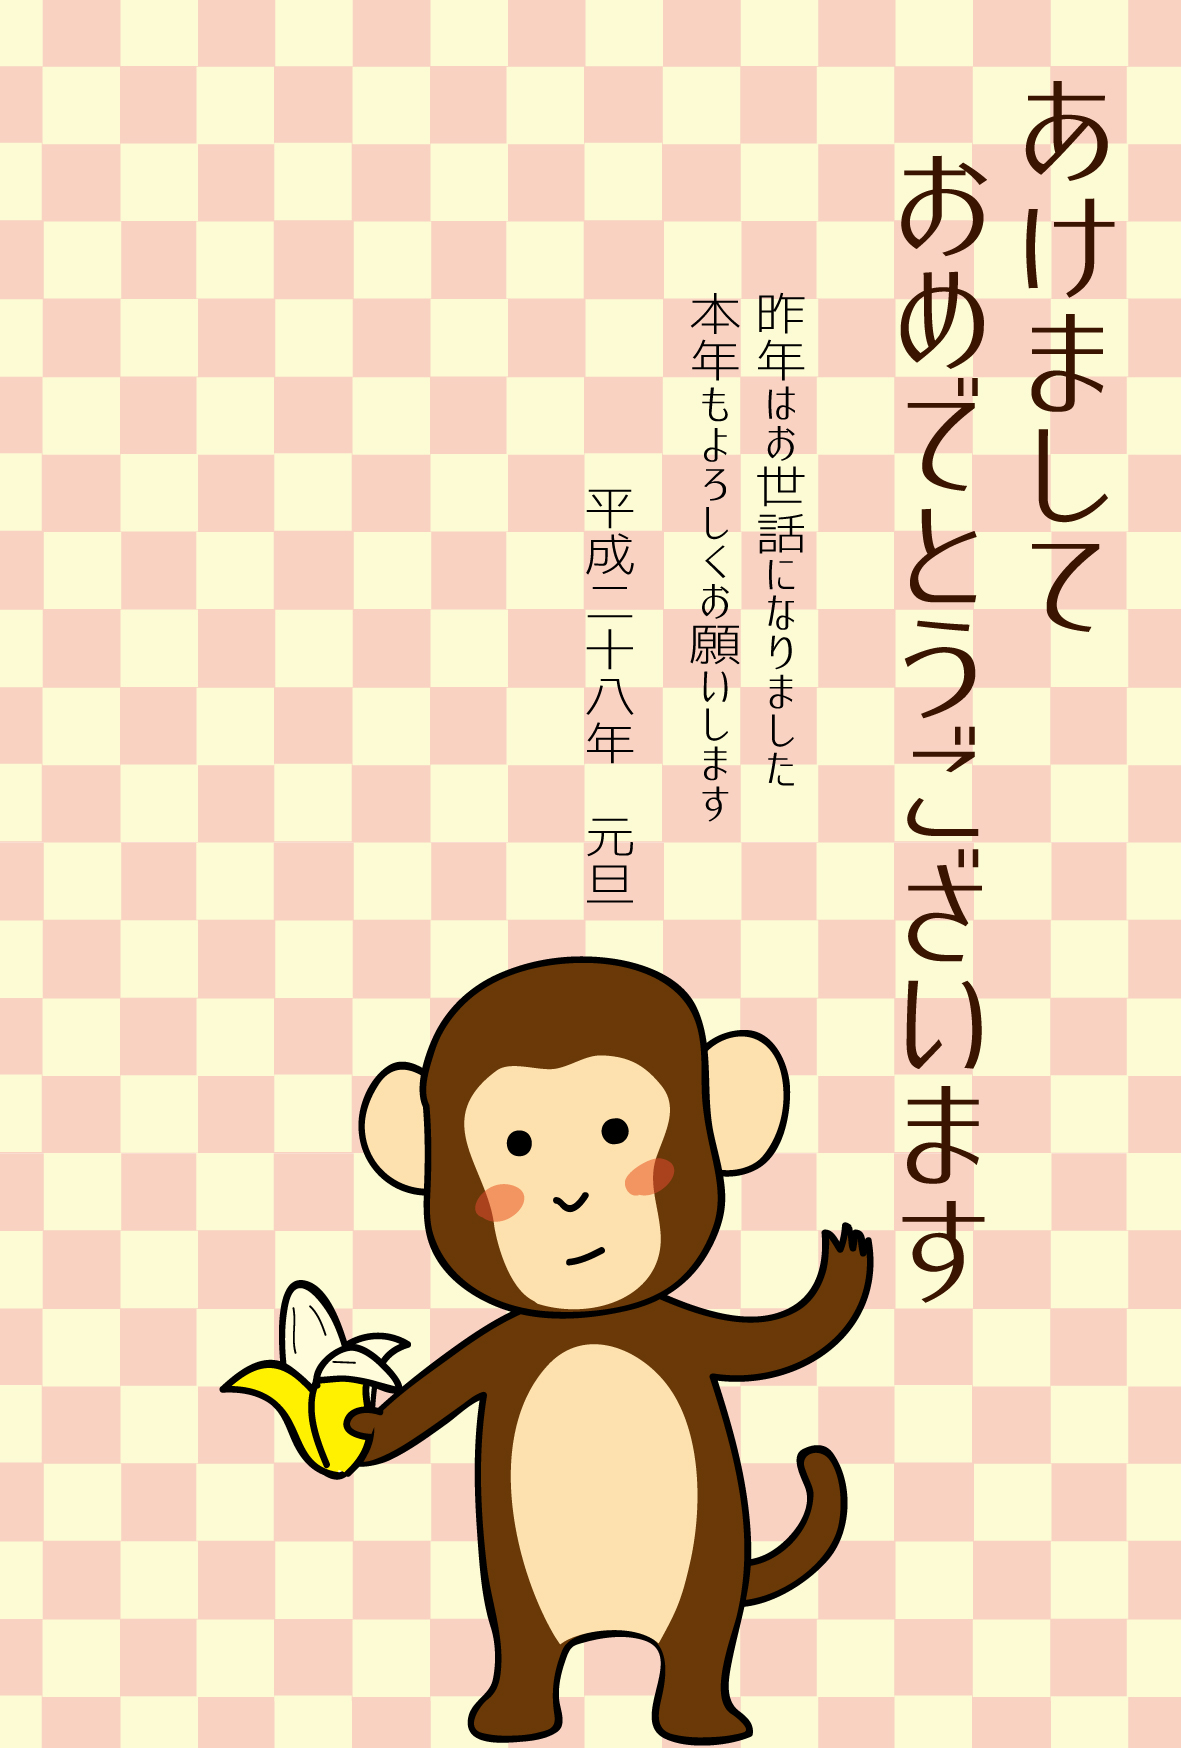 年賀状テンプレート 申 さる バナナを持った猿と市松模様ダウンロード かわいい無料イラスト 年賀素材館